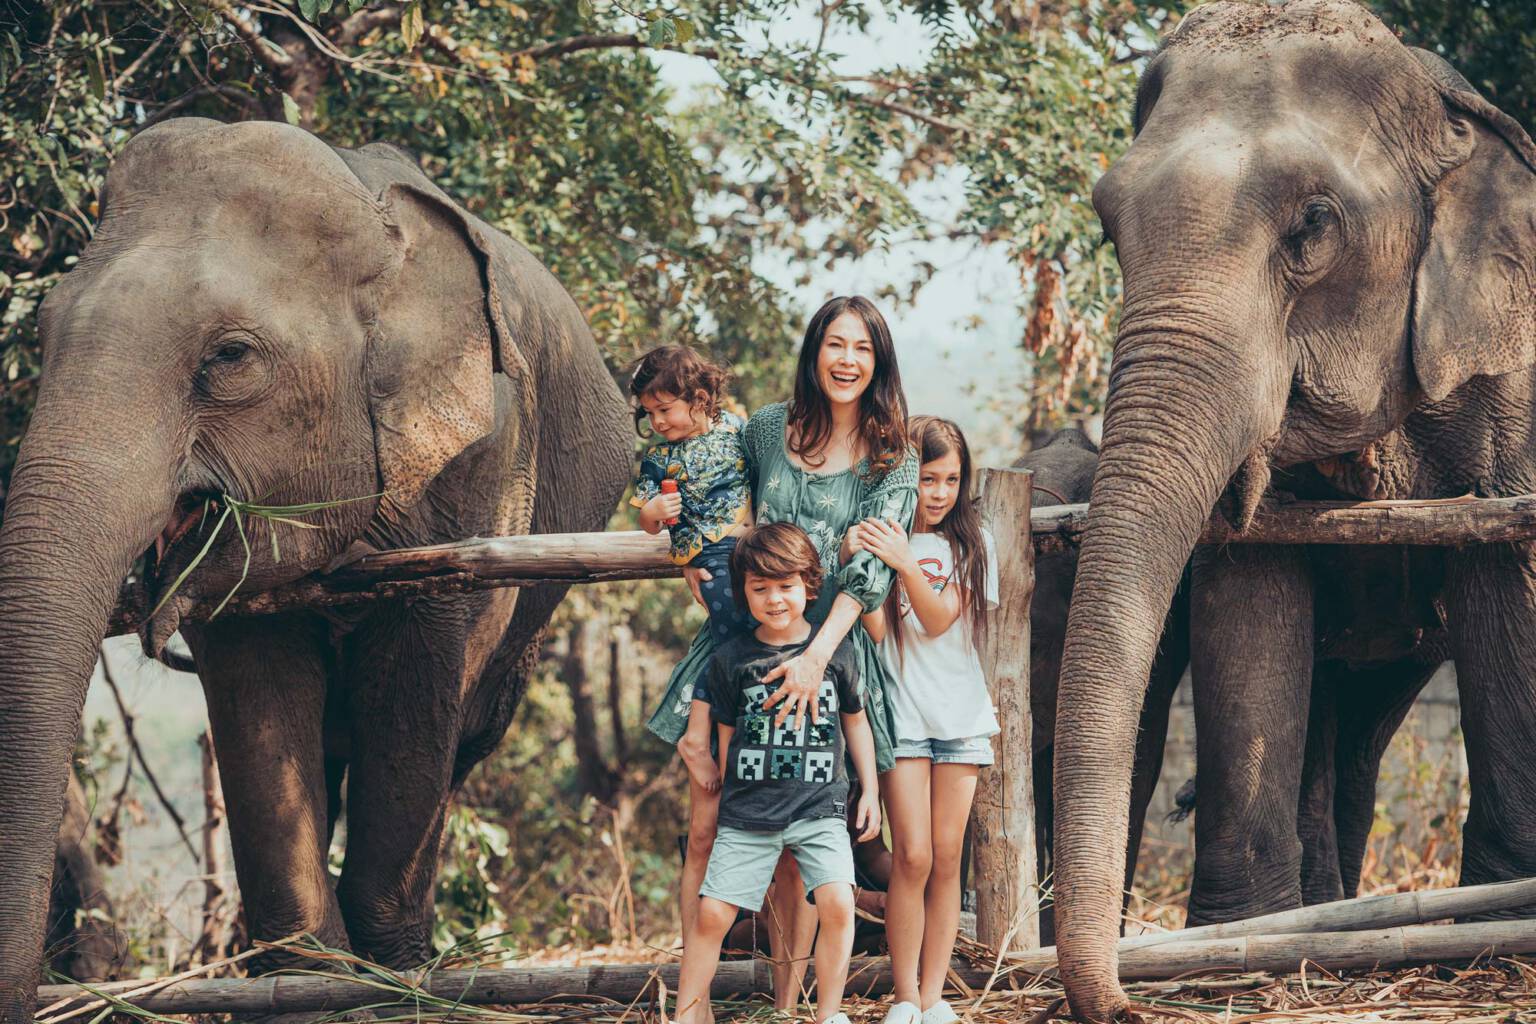 Paul Taylor & Friends Elephant Shoot Chiang Mai